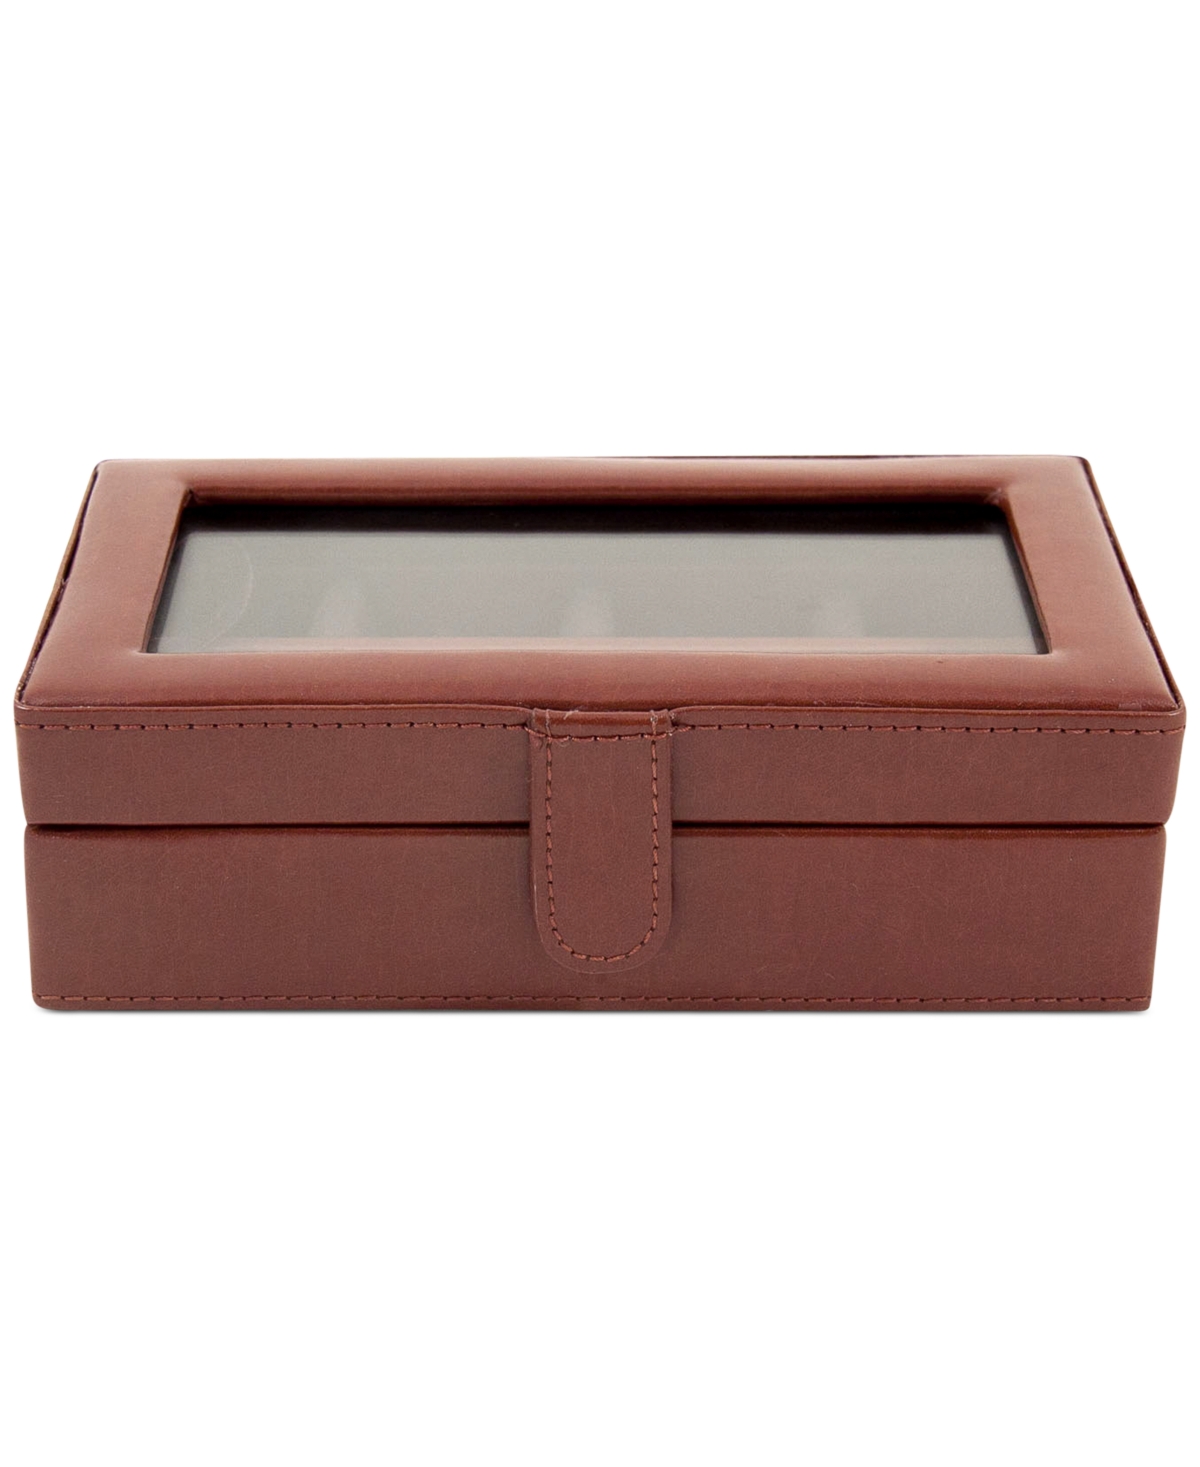 Leather 12-Piece Cufflinks Box - Brown